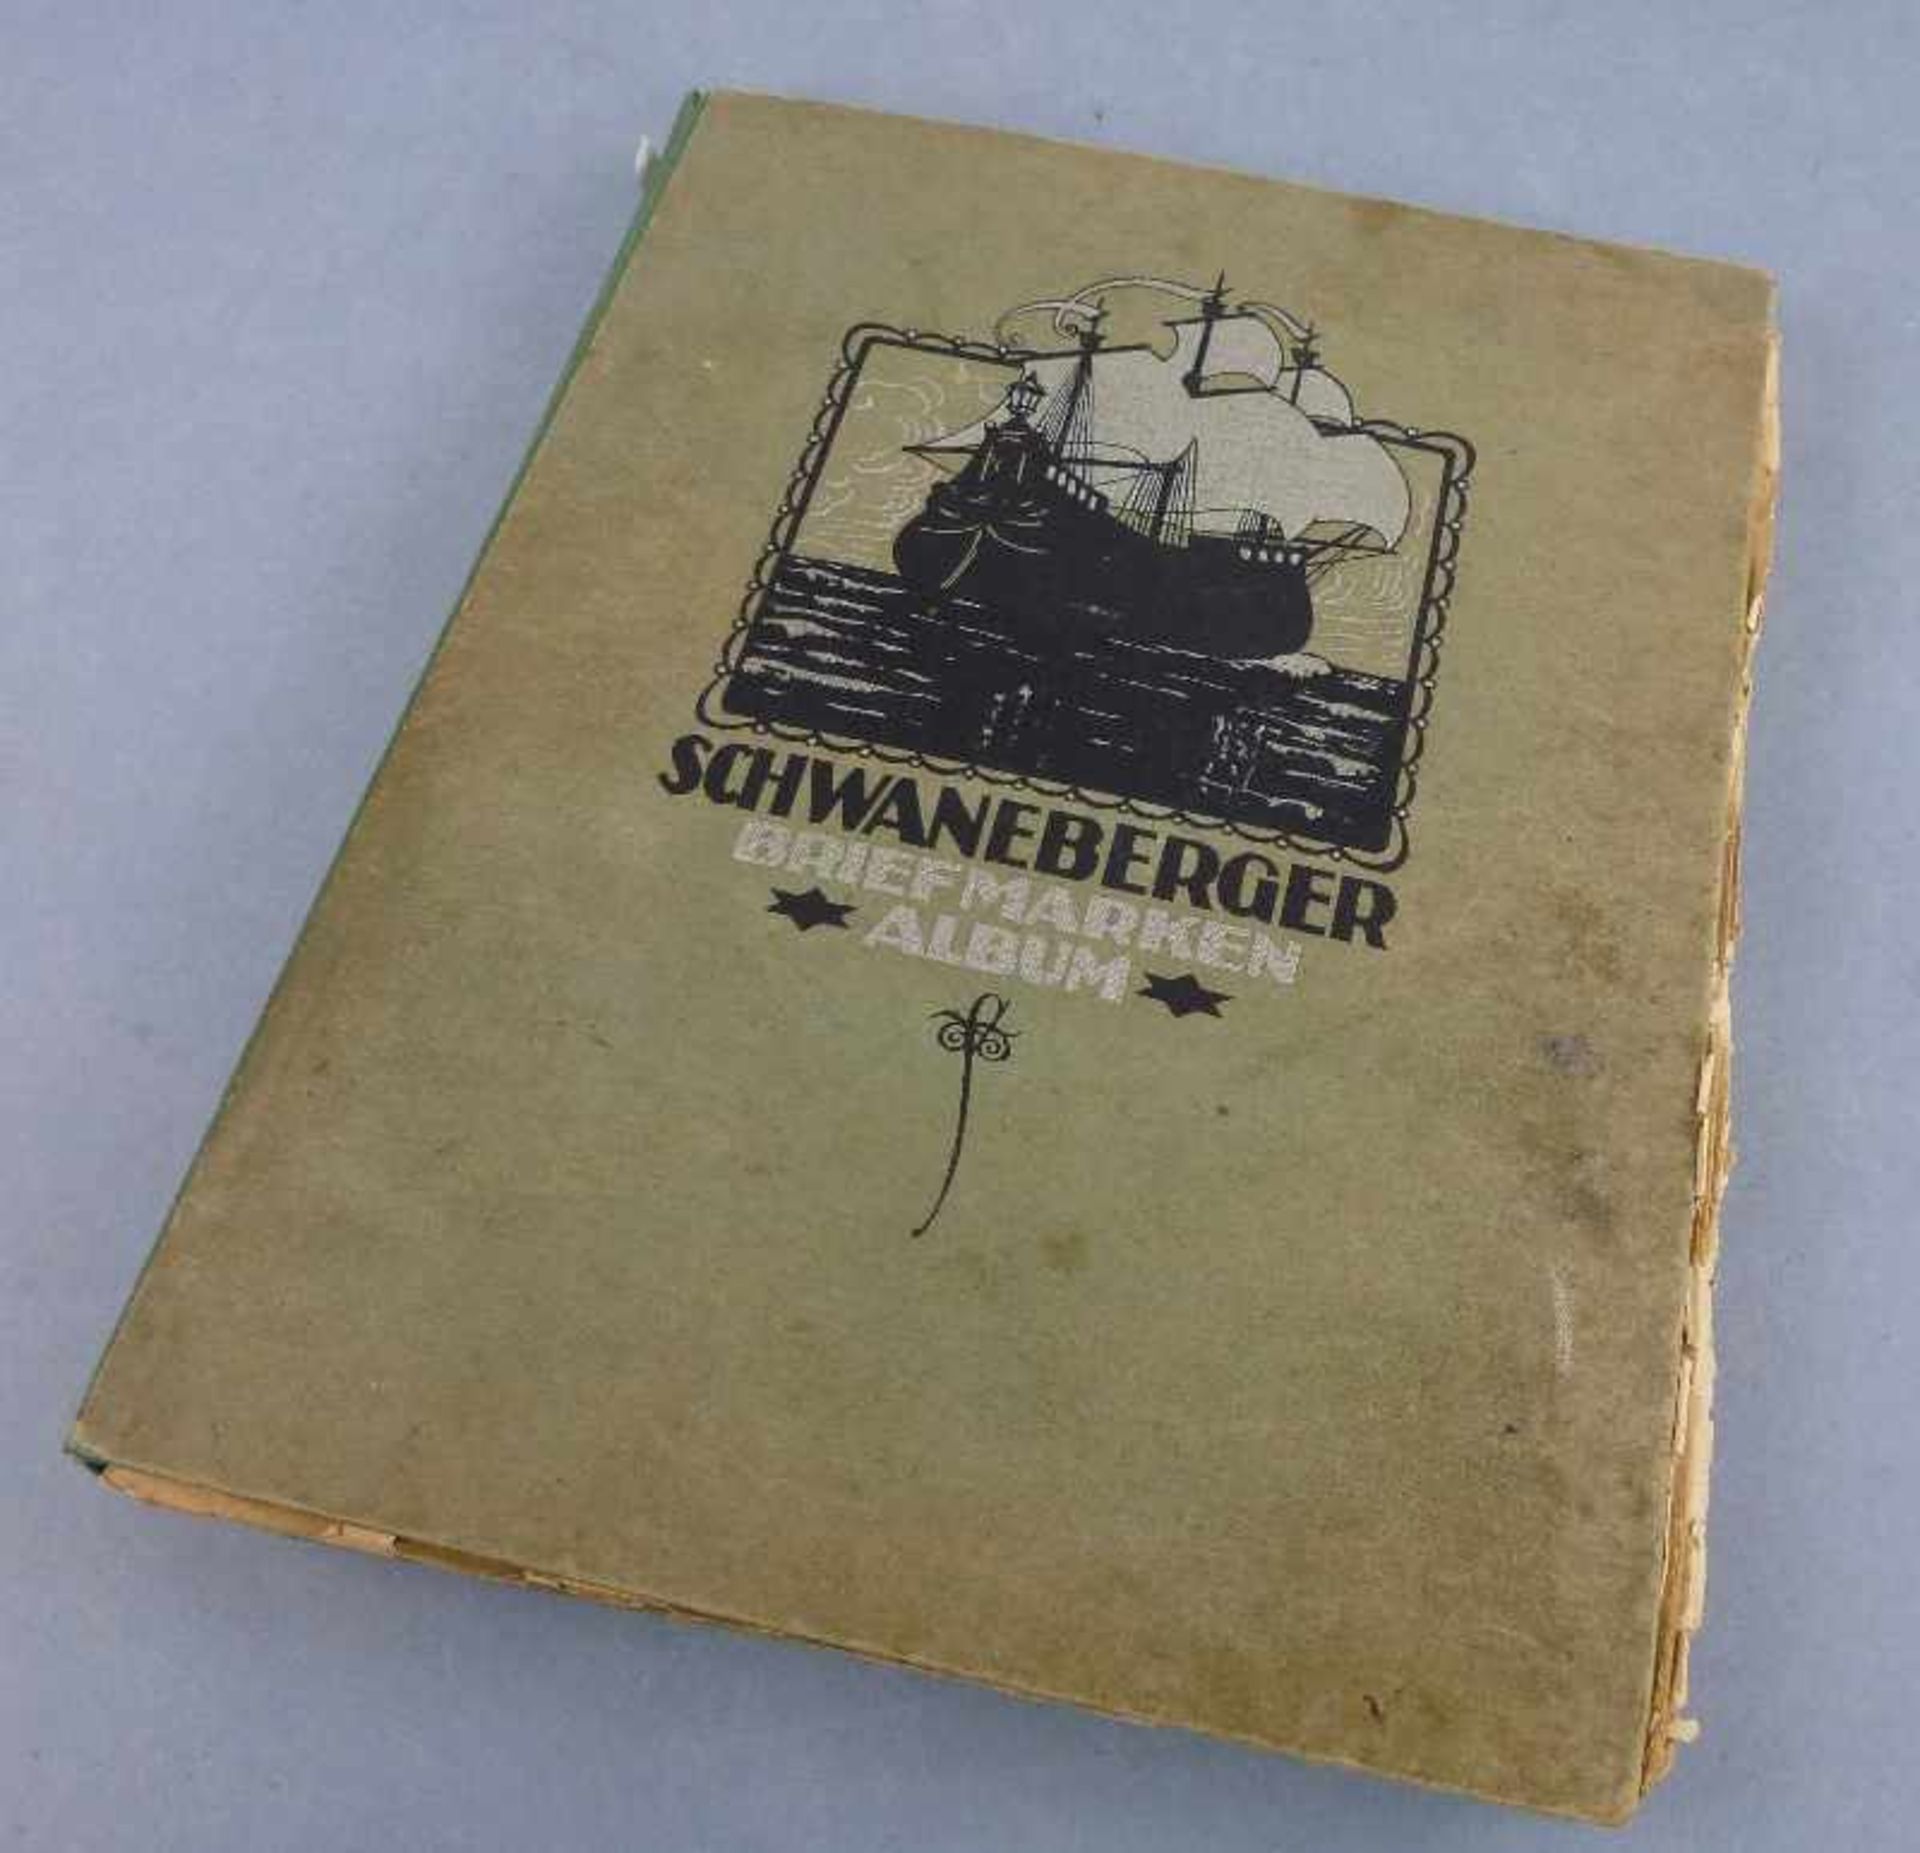 Schwaneberger Briefmarkenalbum, Anfang 20.Jh. "Union-Ausgabe Für Anfangs- und mittlere Sammler",